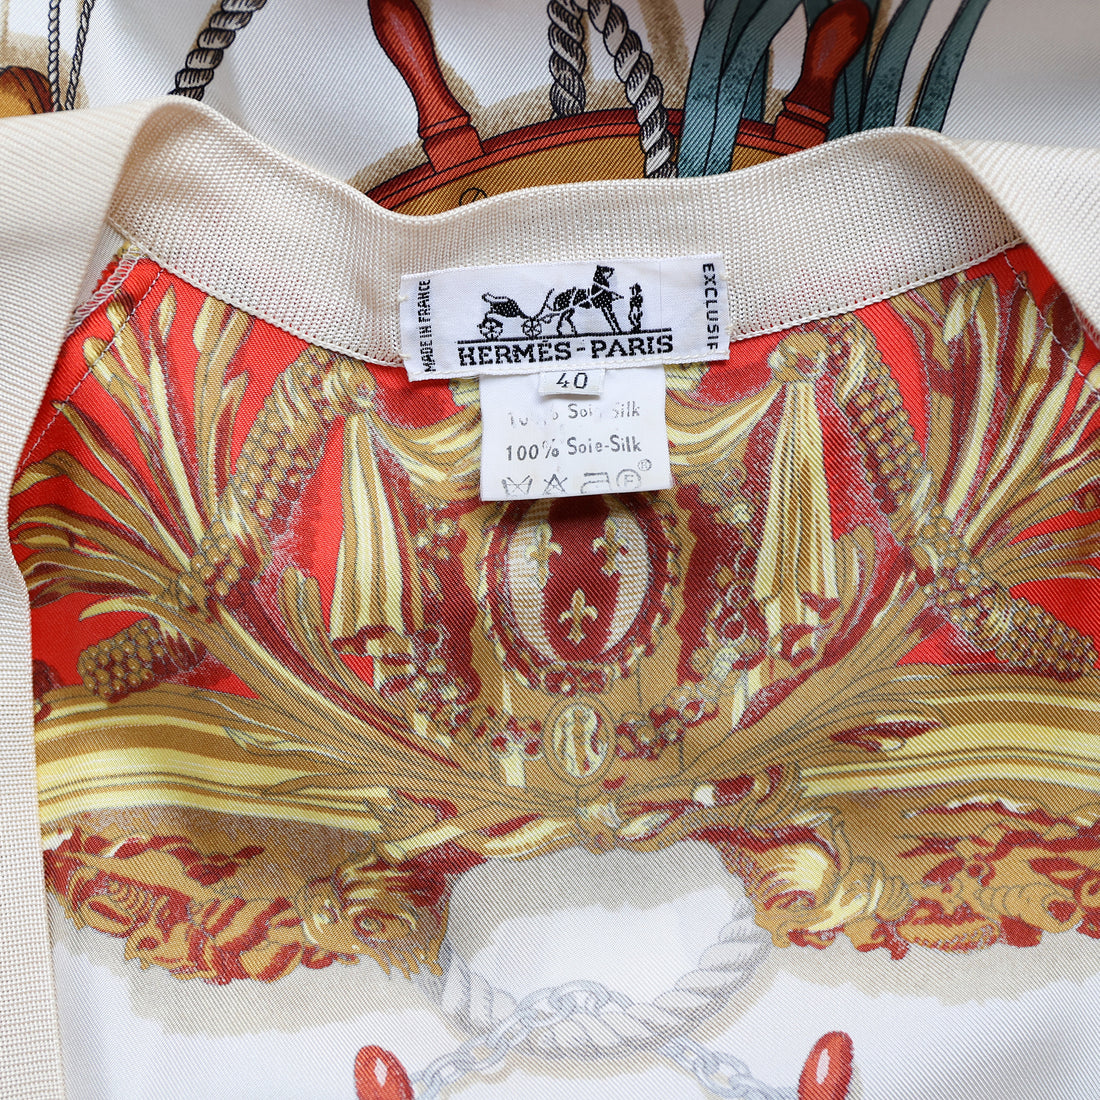 Hermès 1992 "Musée" silk cardigan